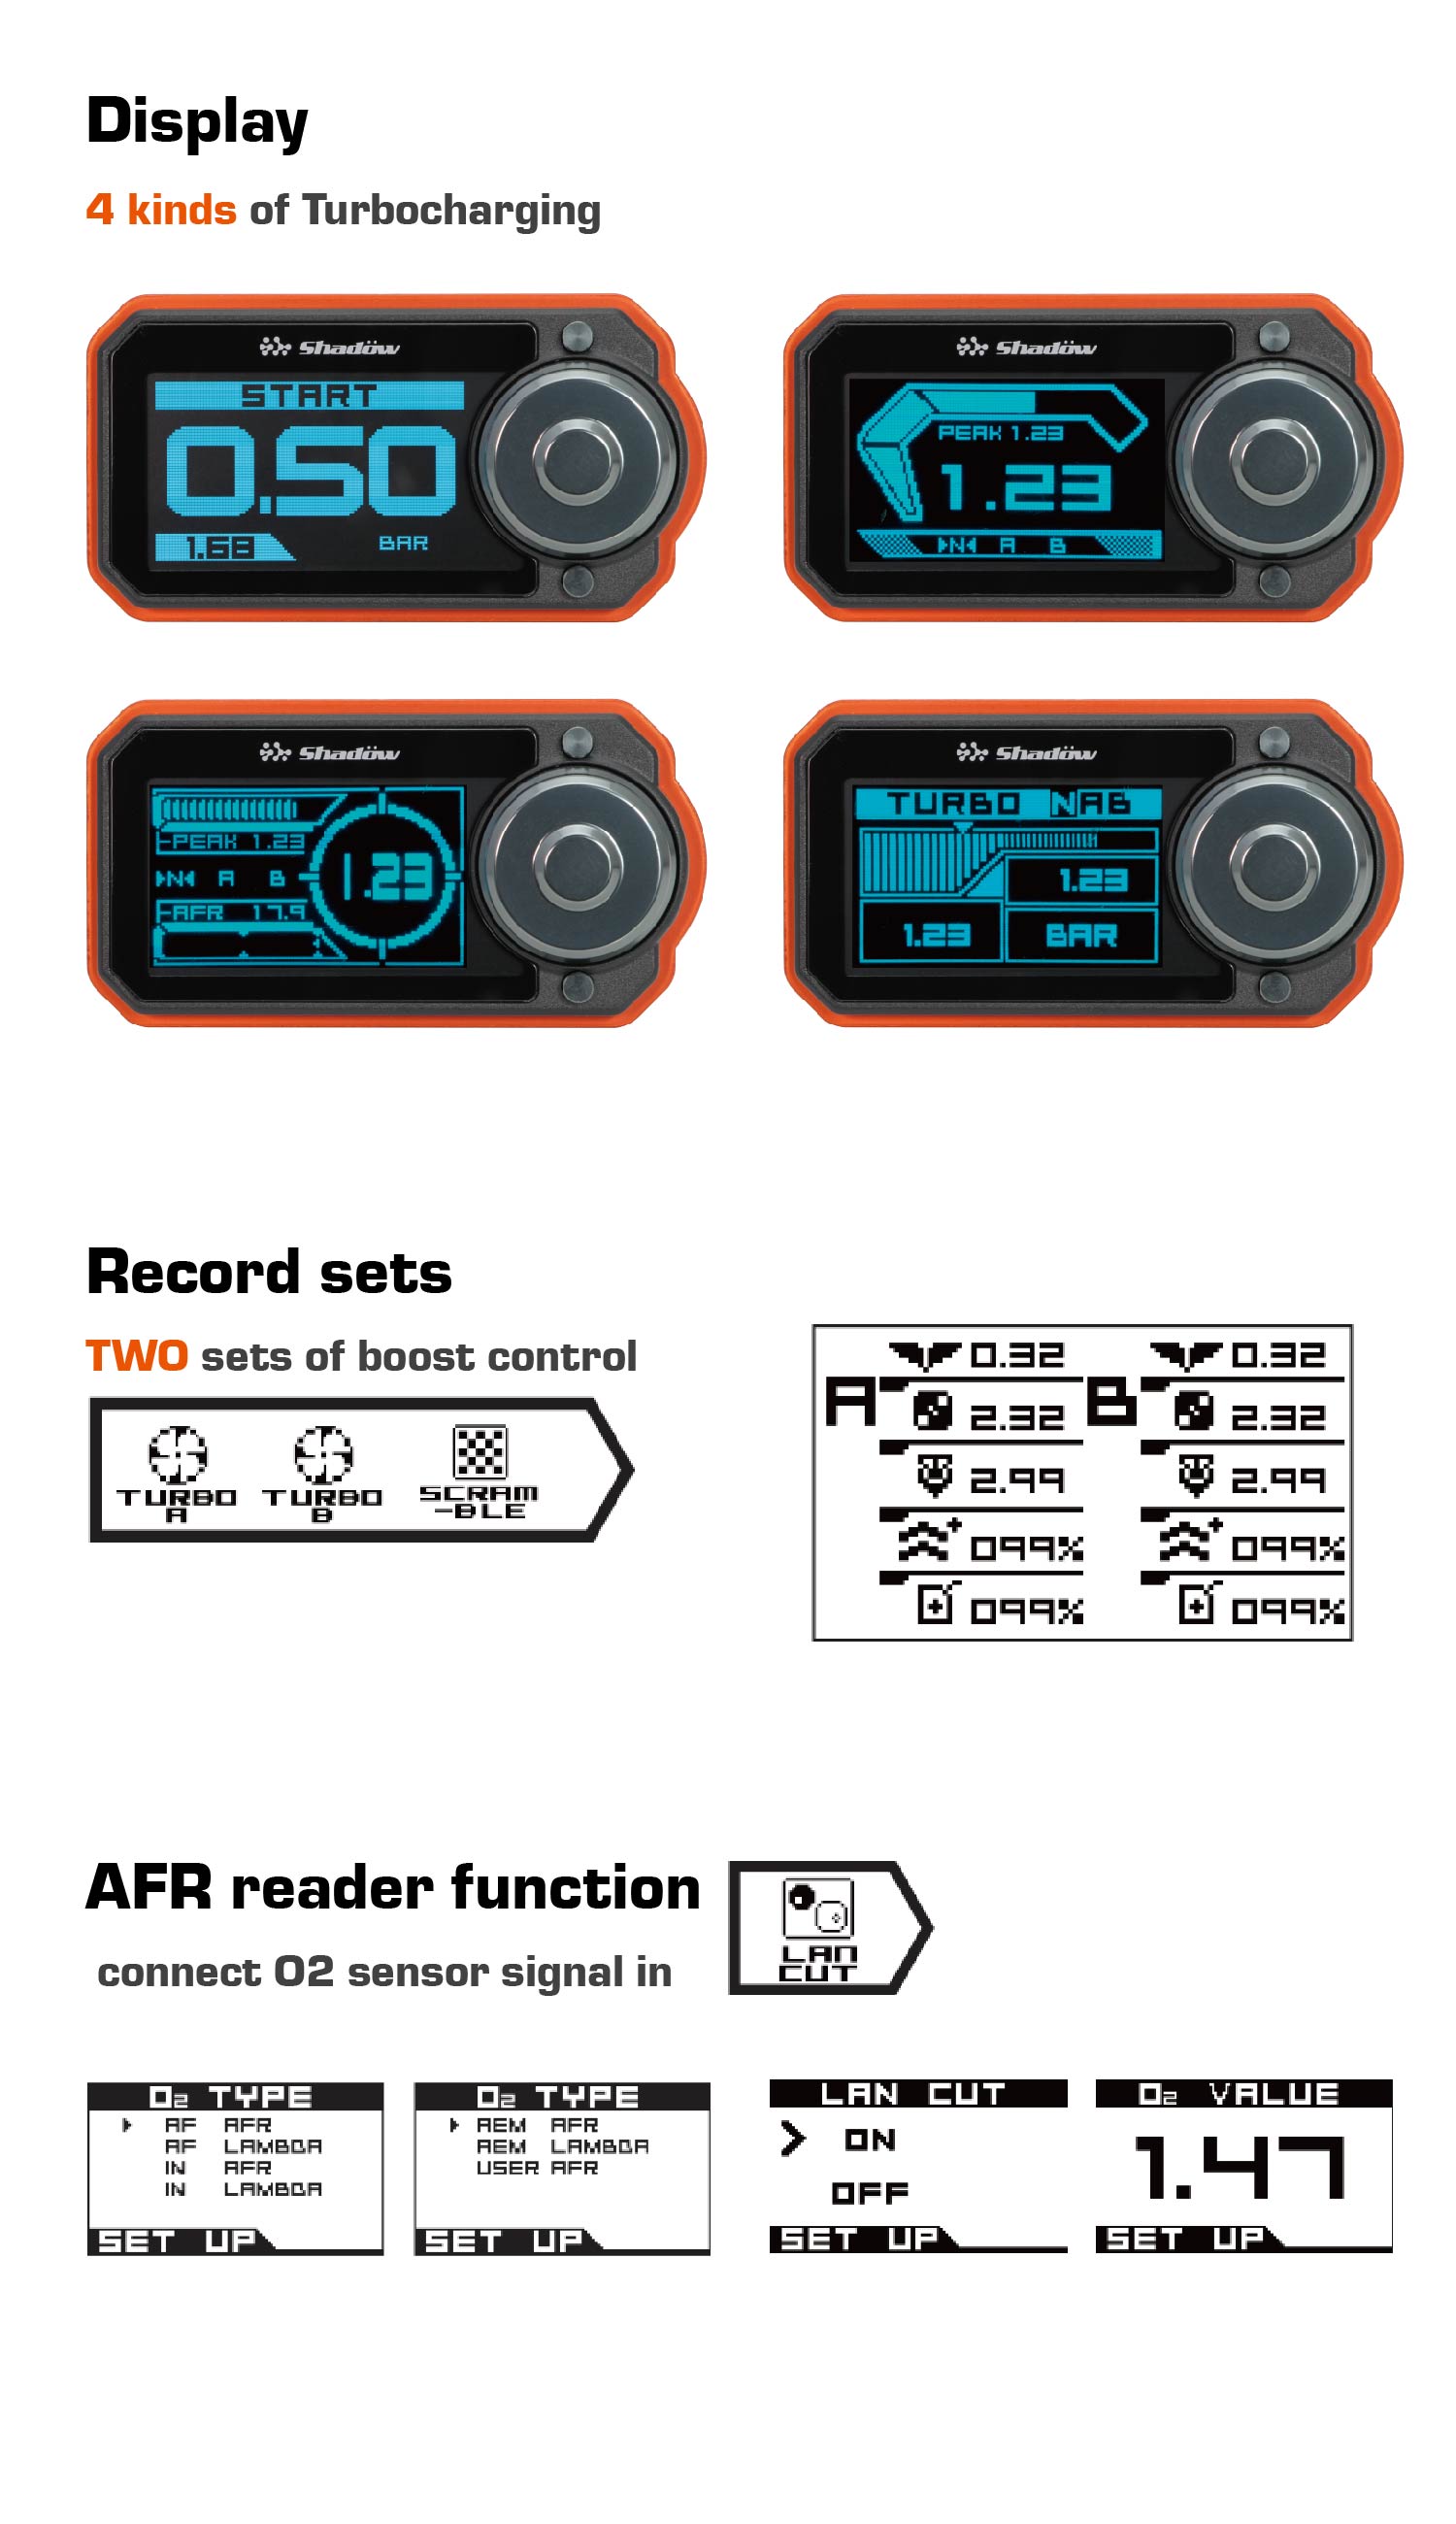 4 tipos de Turbocharging, DOIS conjuntos de controle de reforço, função leitor AFR.